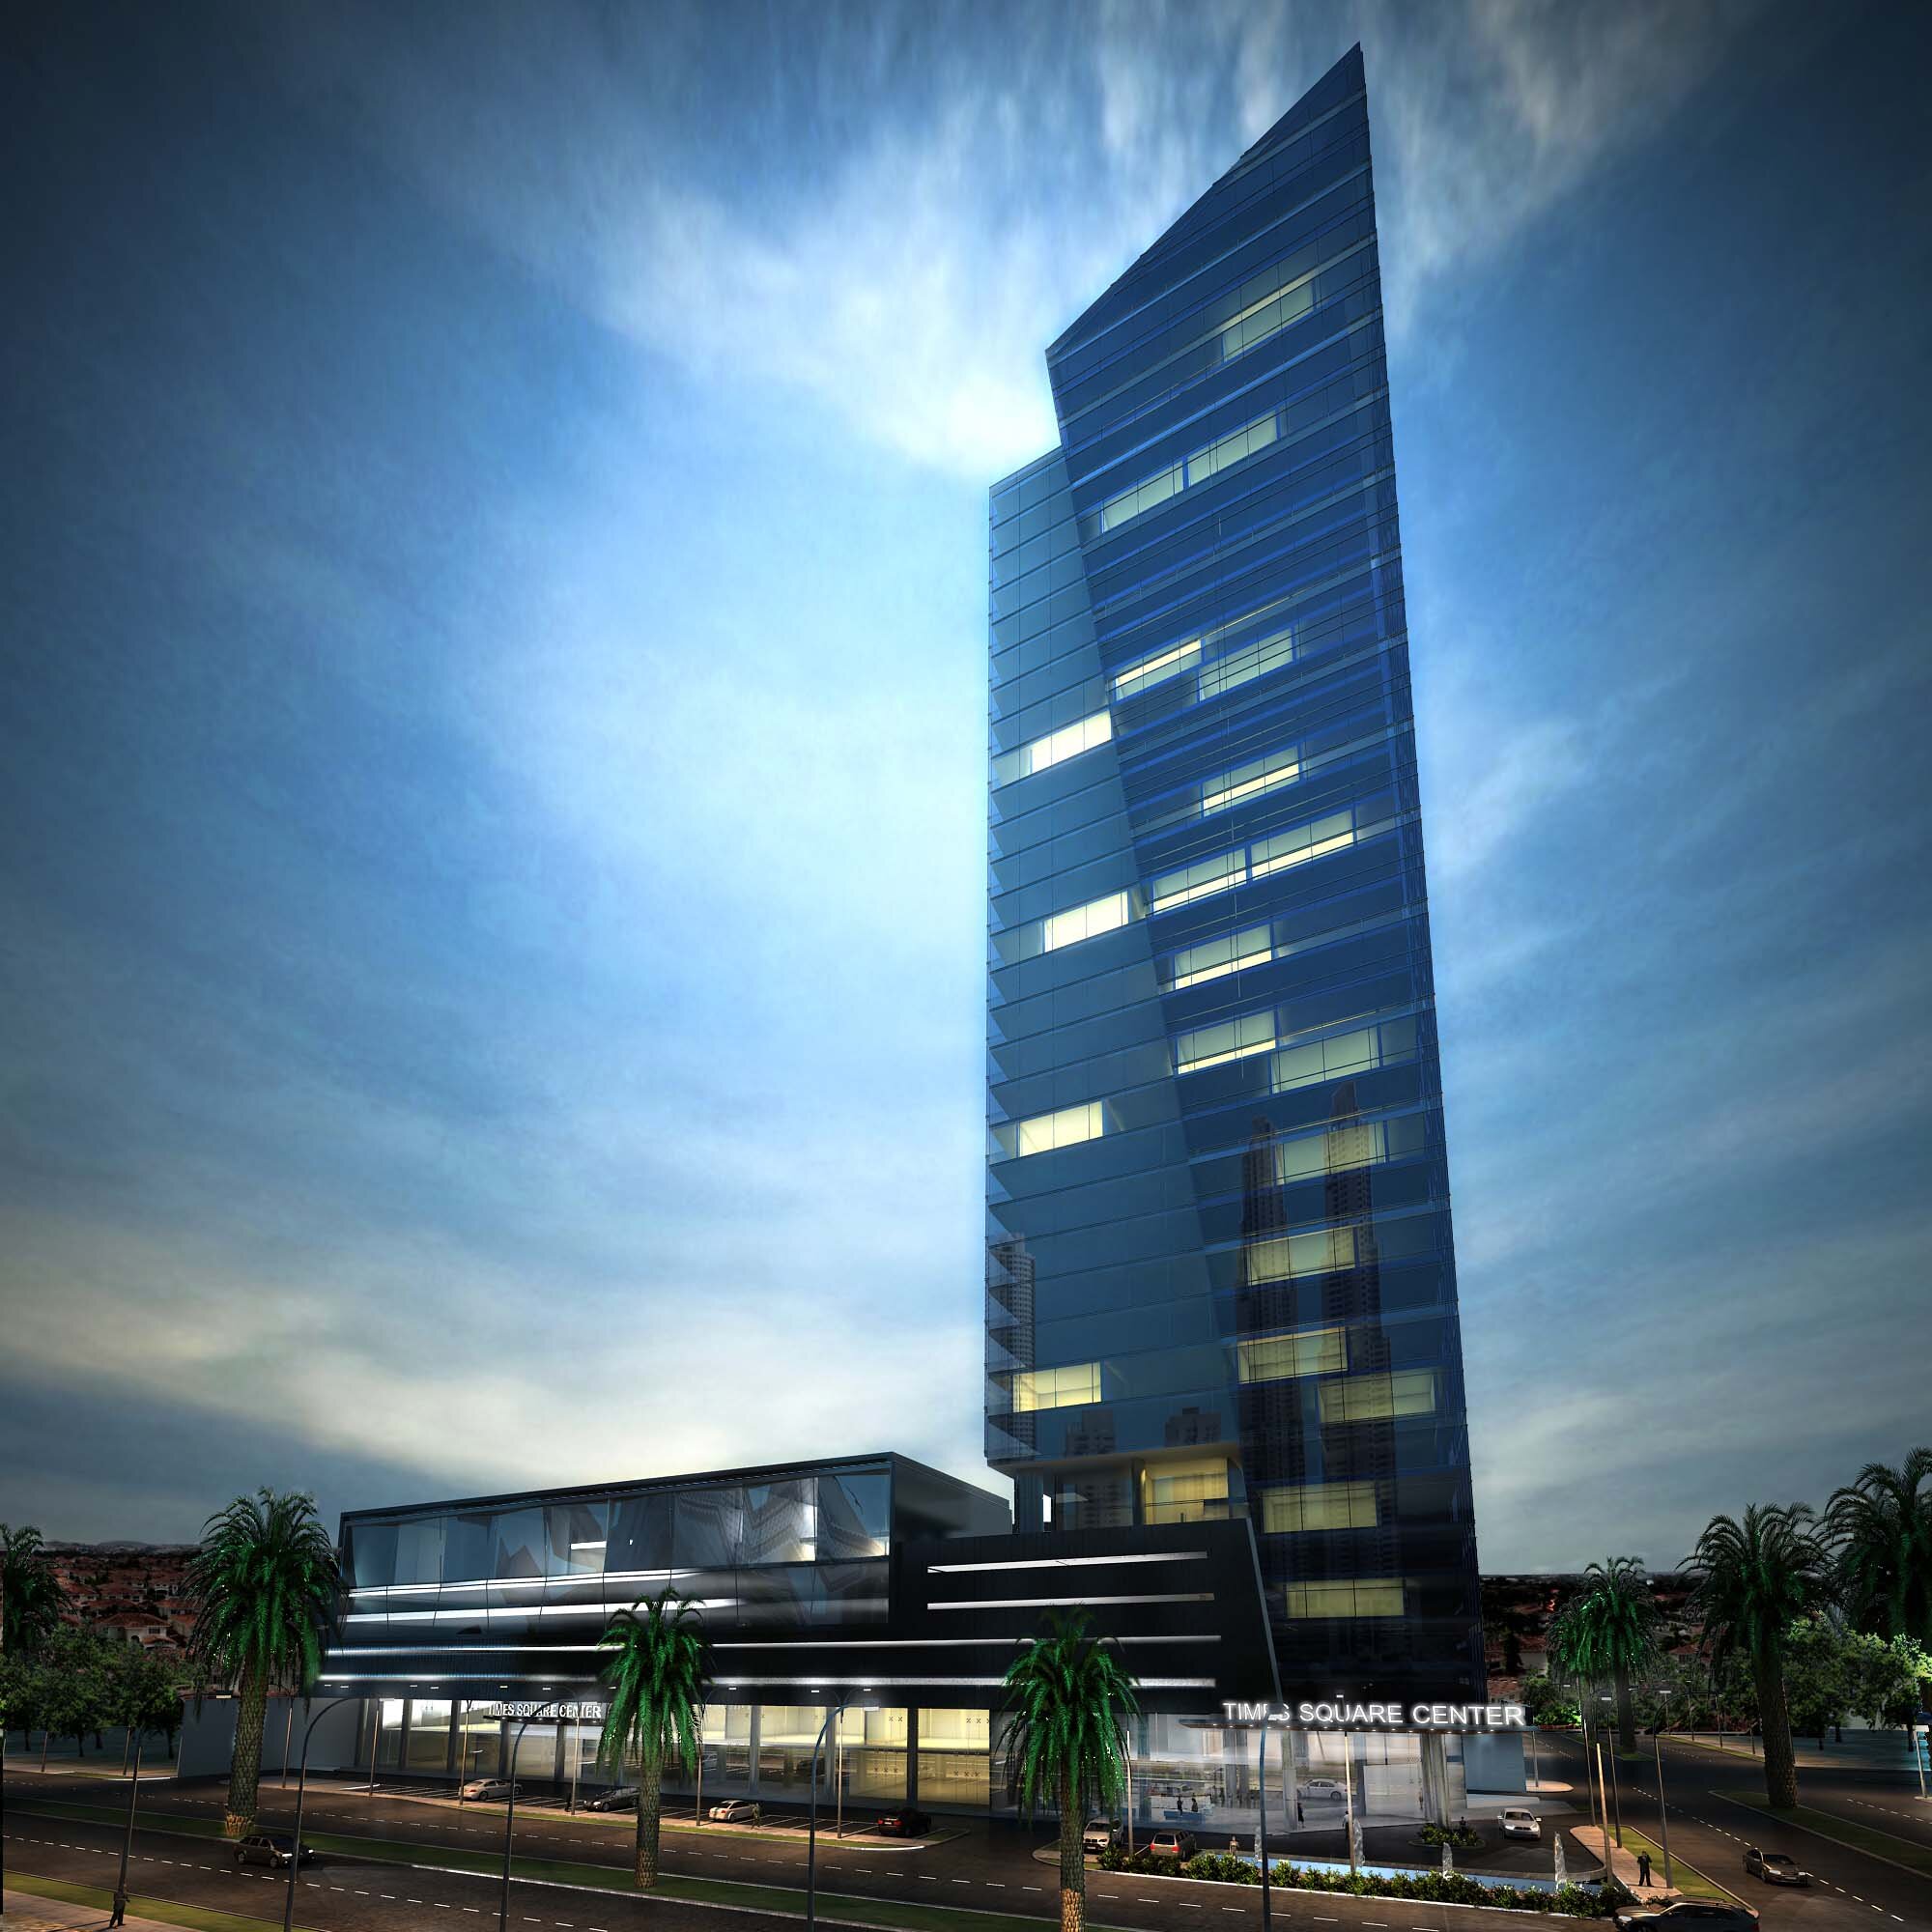 Lujosa torre de oficinas y locales comerciales en un área exclusiva y a pocos minutos del centro de la ciudad